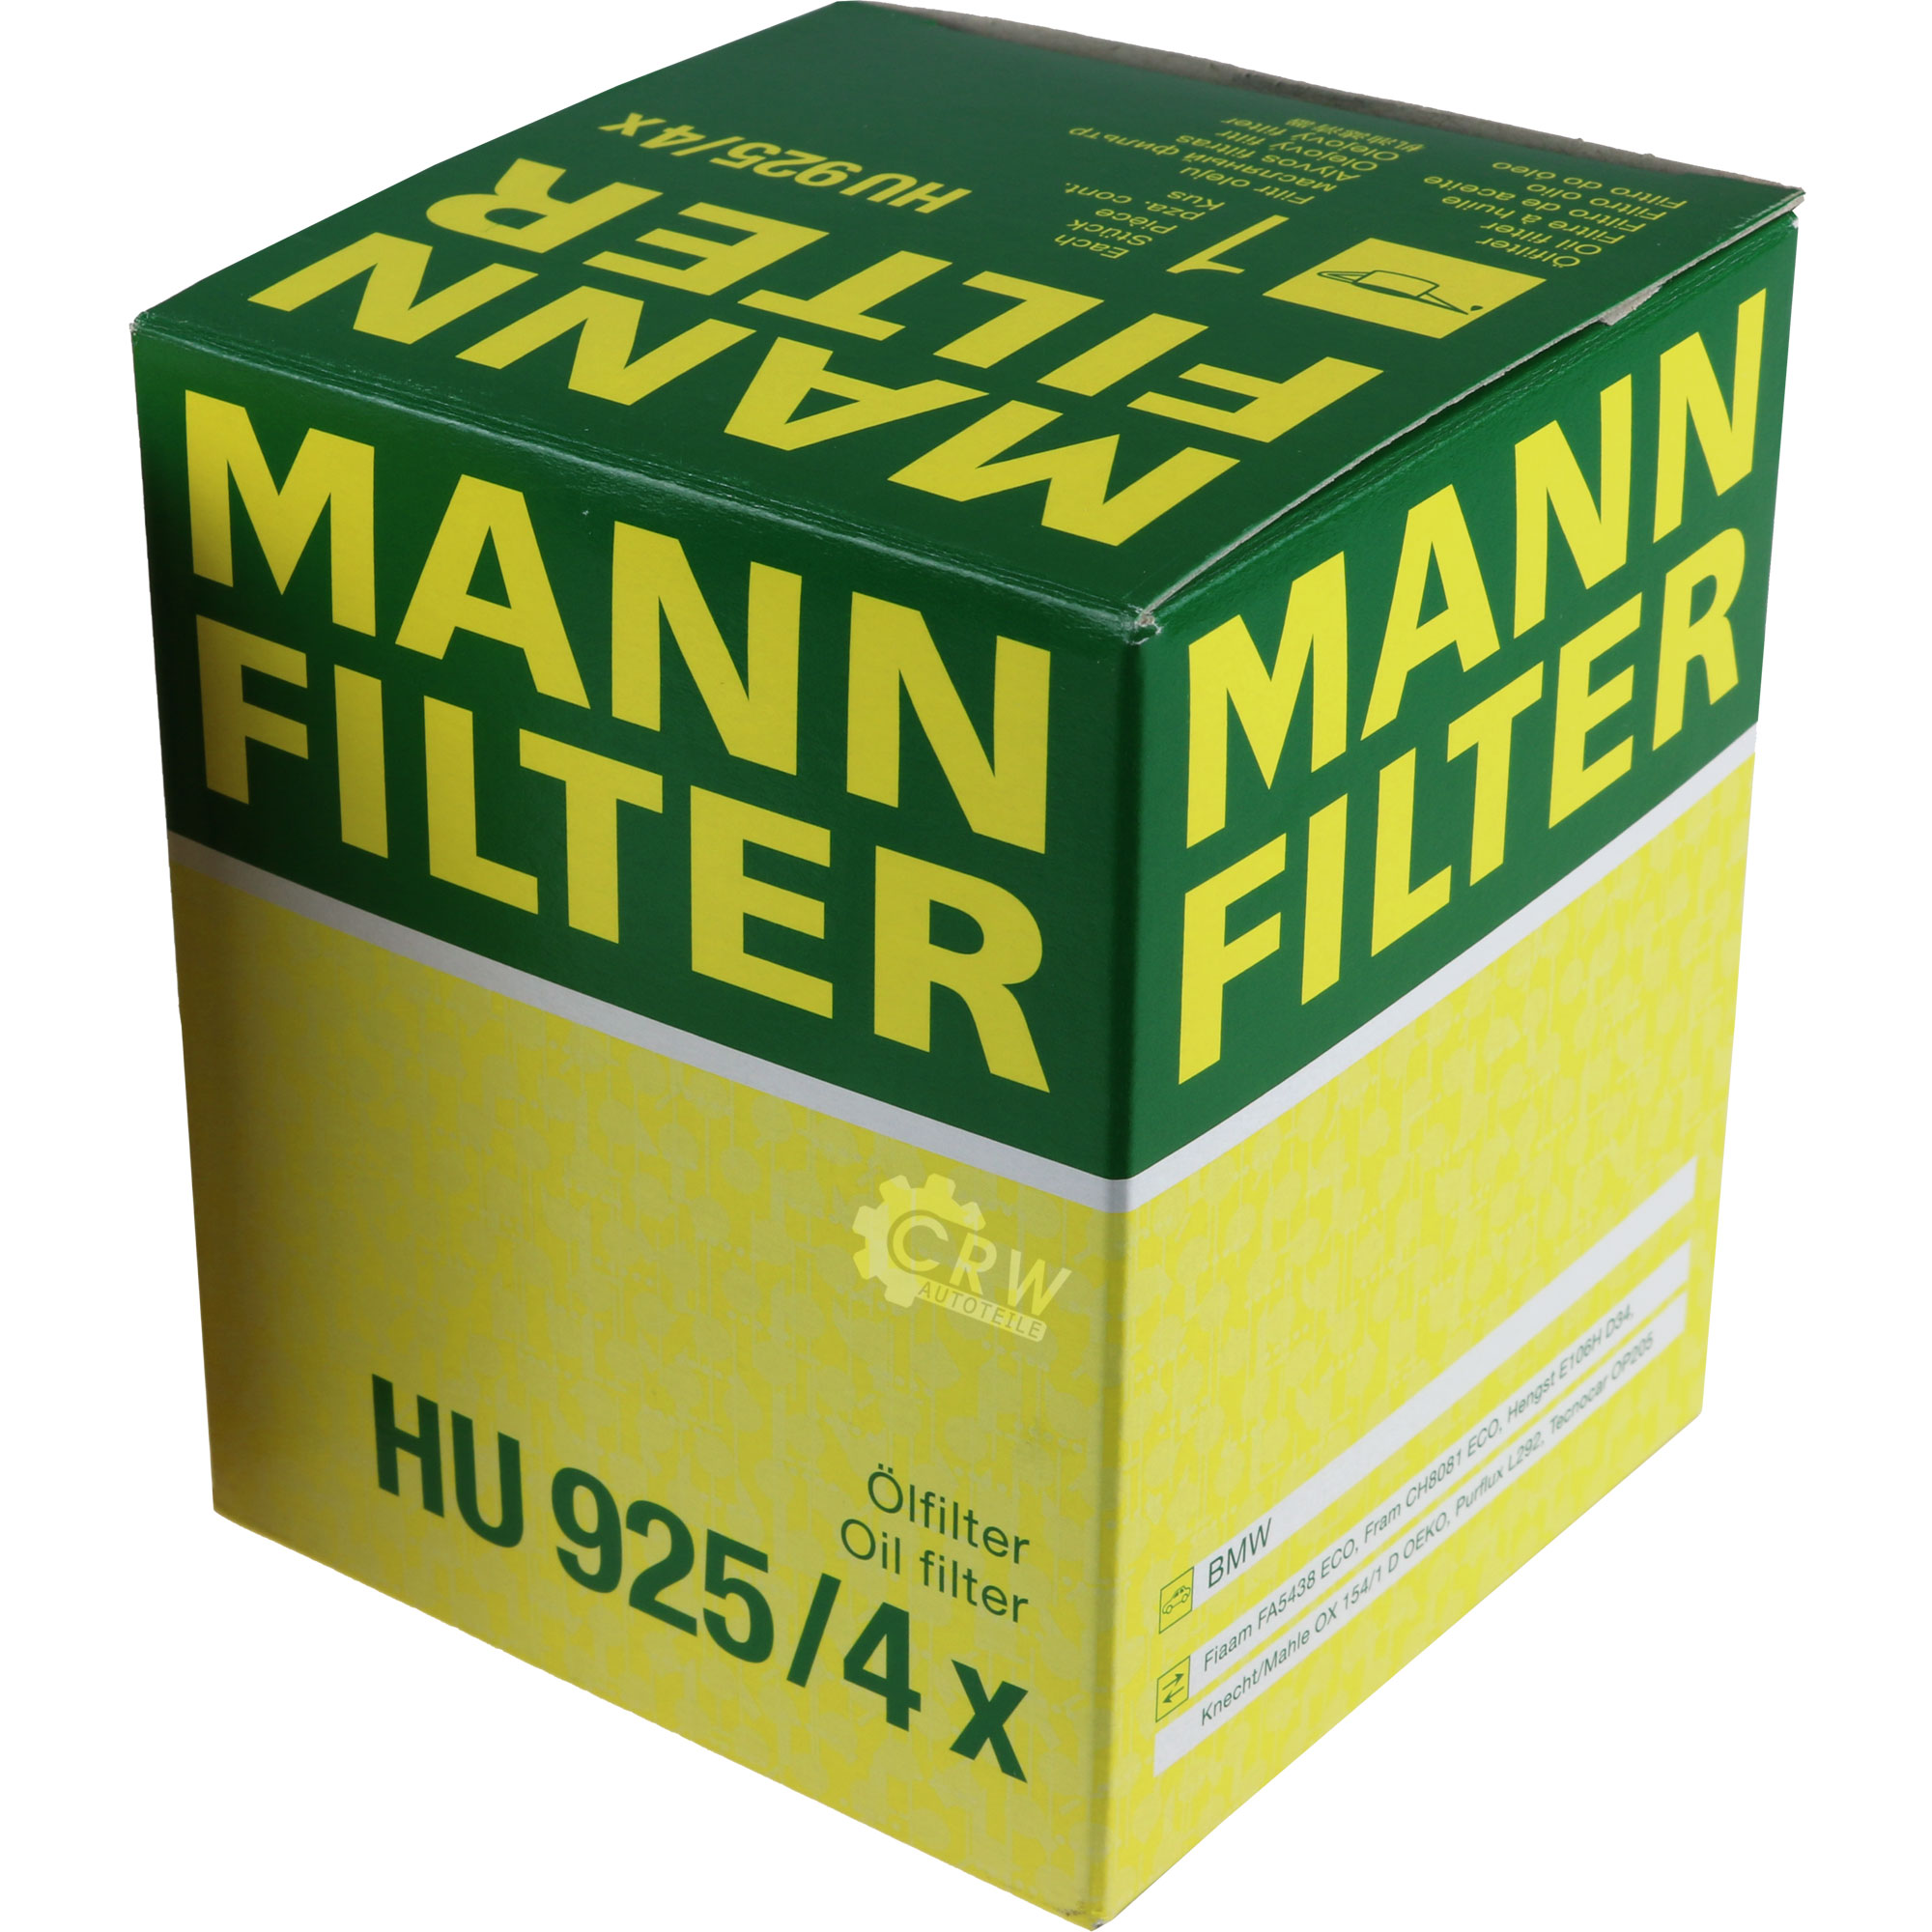 MANN-FILTER Ölfilter HU 925/4 x Oil Filter